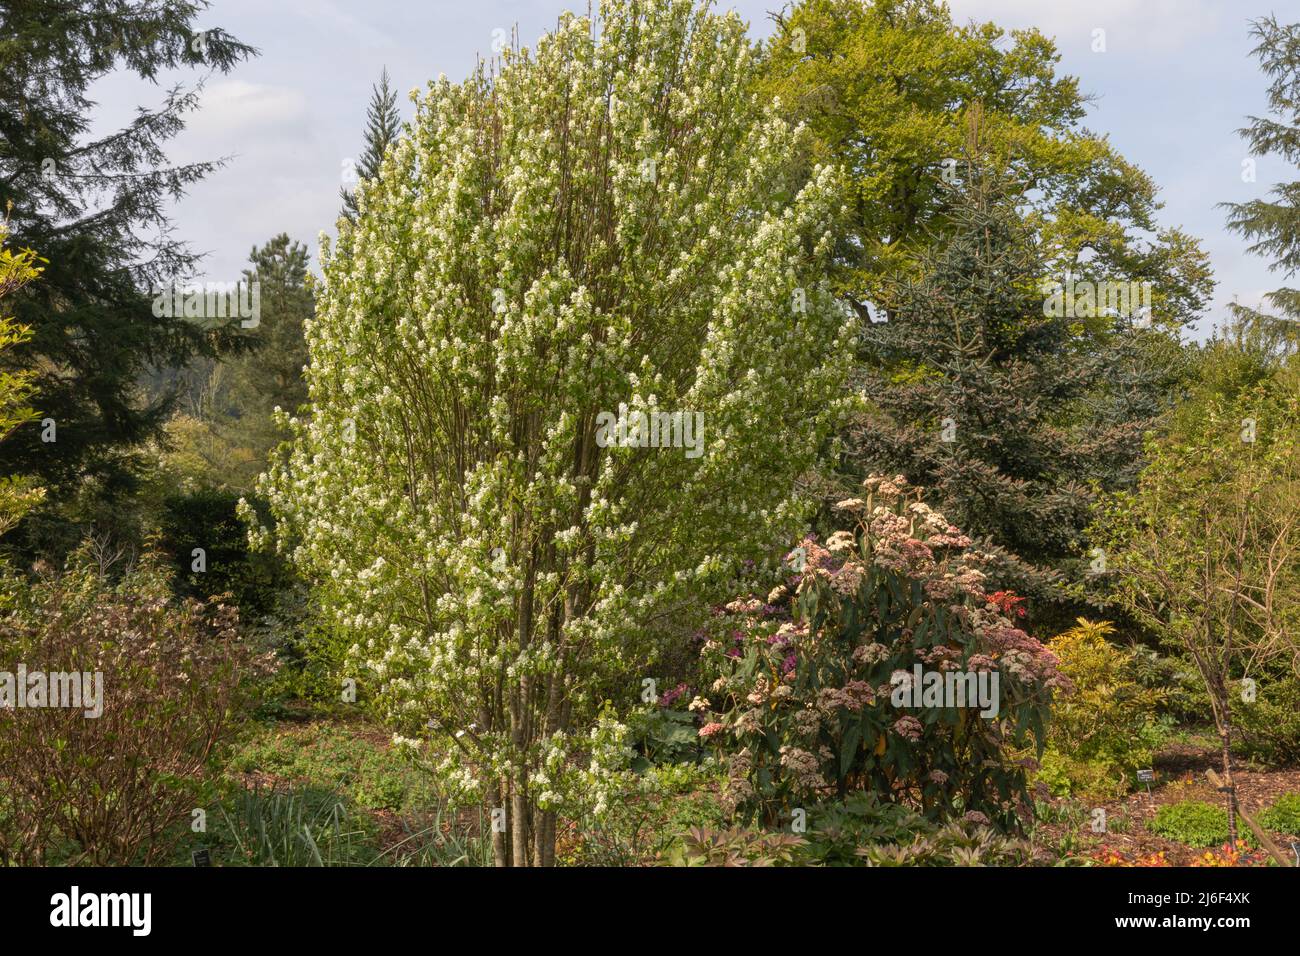 Im Wooland der Nadelbäume und Sträucher liegt der amelanchier alnifolia Obelisk, ein kleiner dezidoser Baum mit auffälligen weißen Blüten Stockfoto